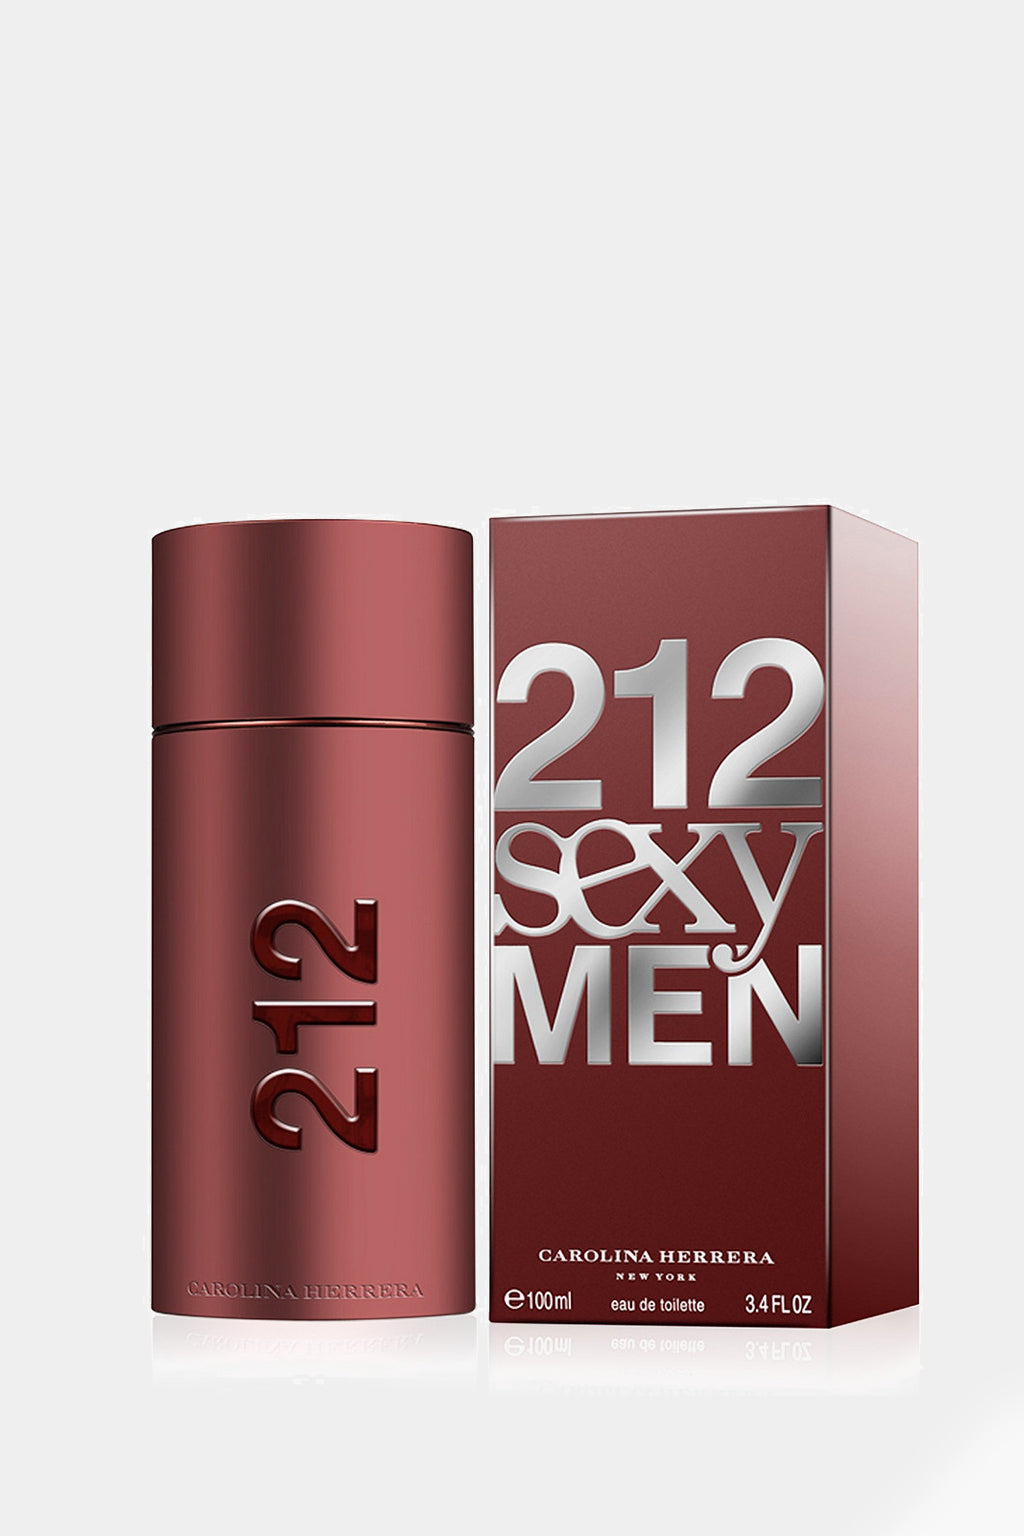 Carolina Herrera - 212 Sexy Men Eau de Toilette